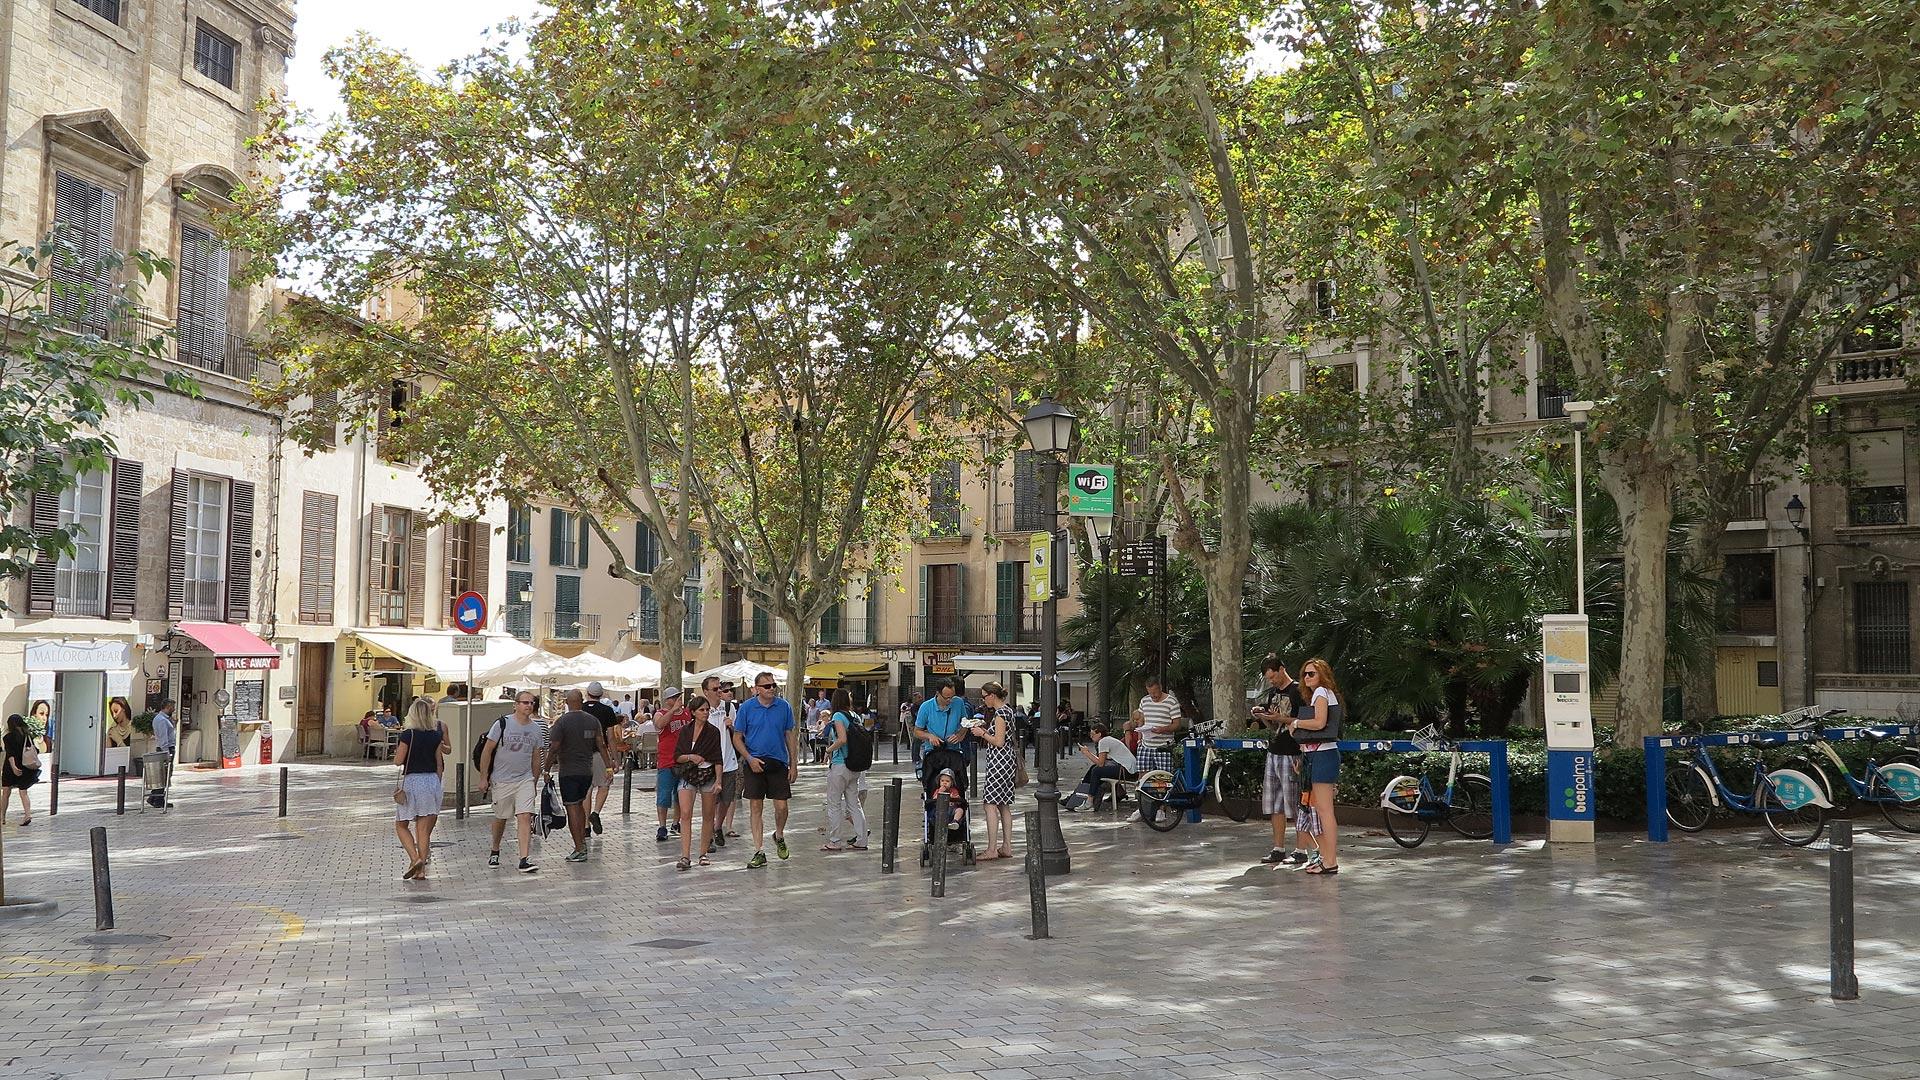 Belebter Platz in der gemütlichen Altstadt von Palma de Mallorca.